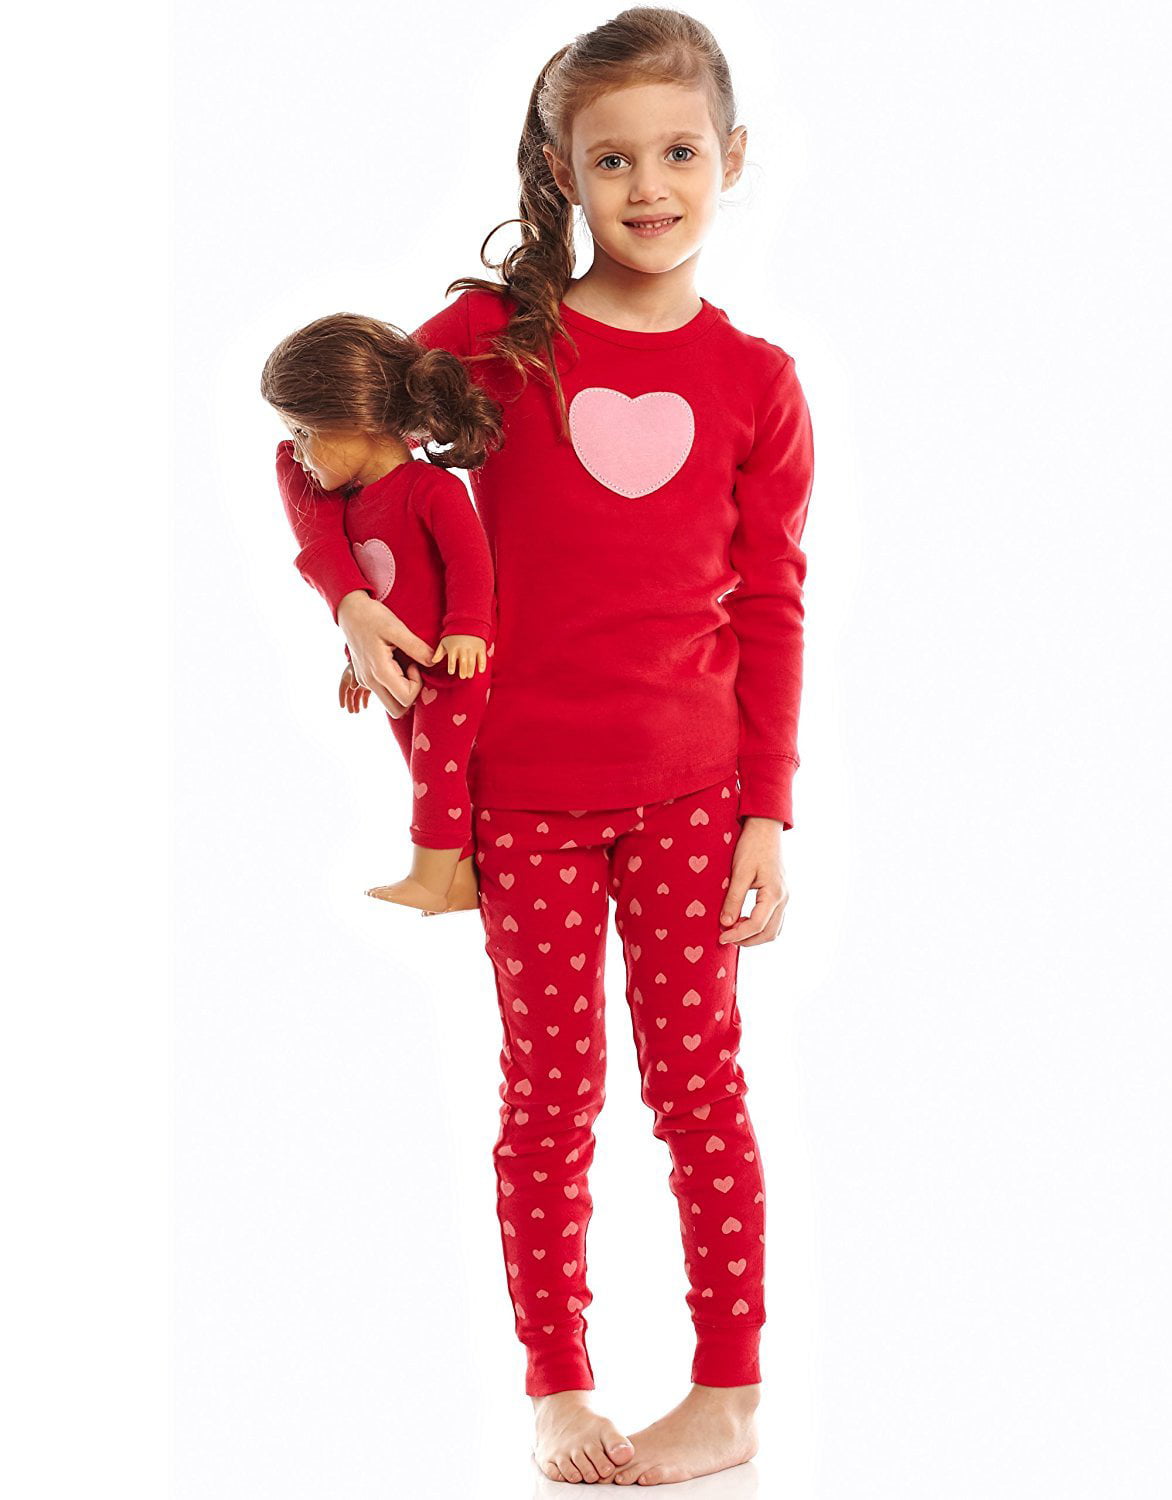 Leveret Kids & Toddler Pajamas Matching Doll & Girls Pajamas 100% Cotton Christmas Pjs Set Fits American Girl 2-14 Years 